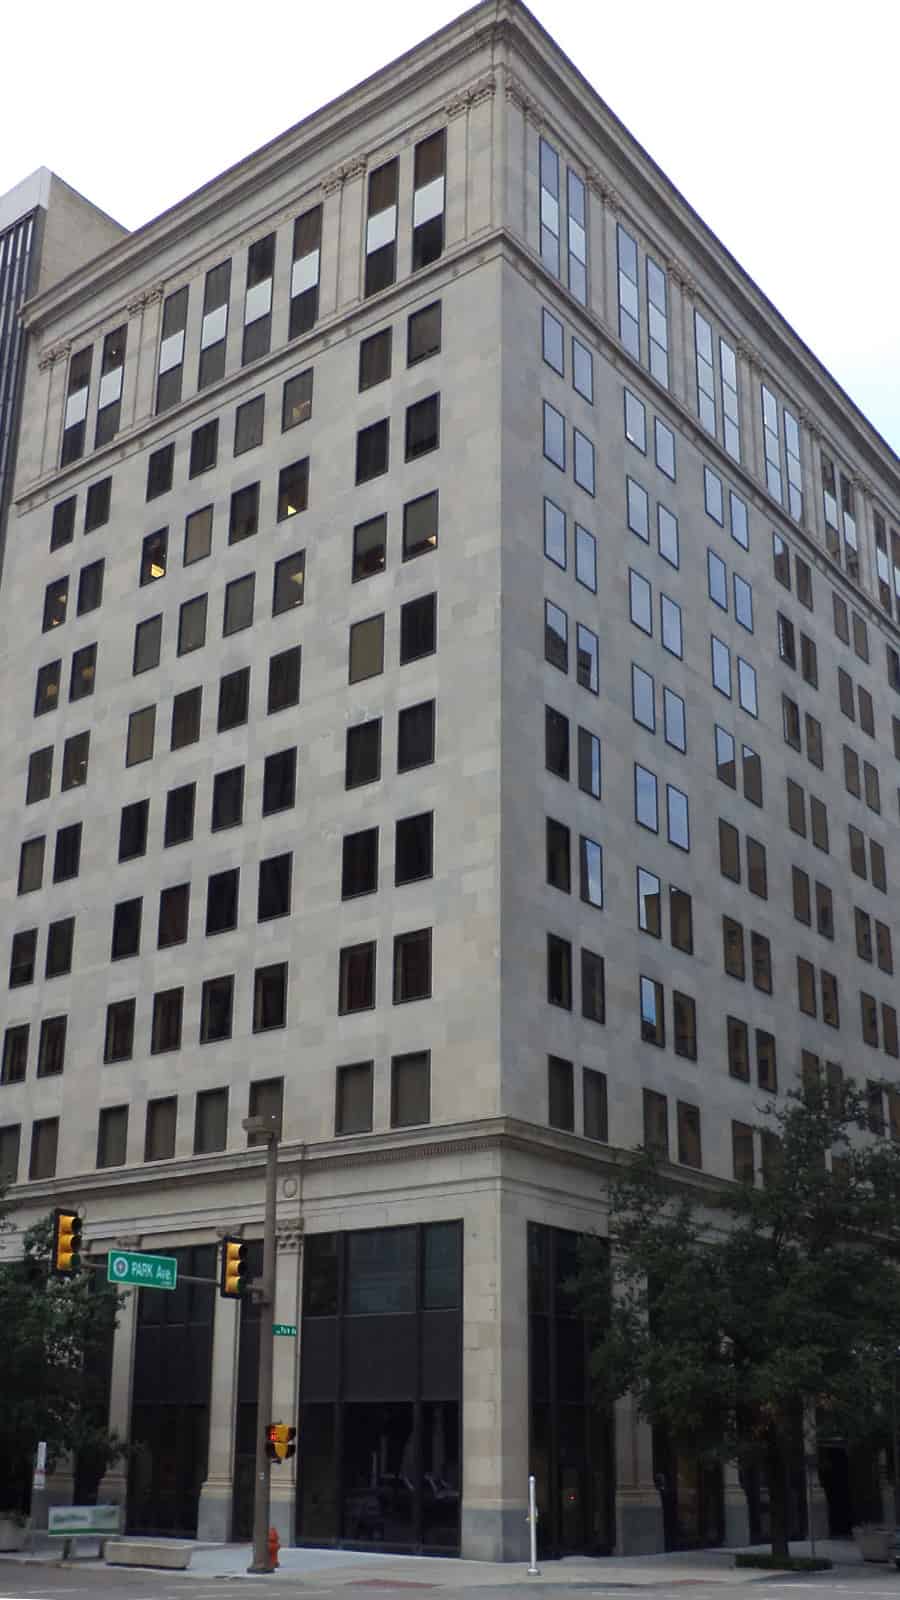 Photo of 100 Park Avenue Building